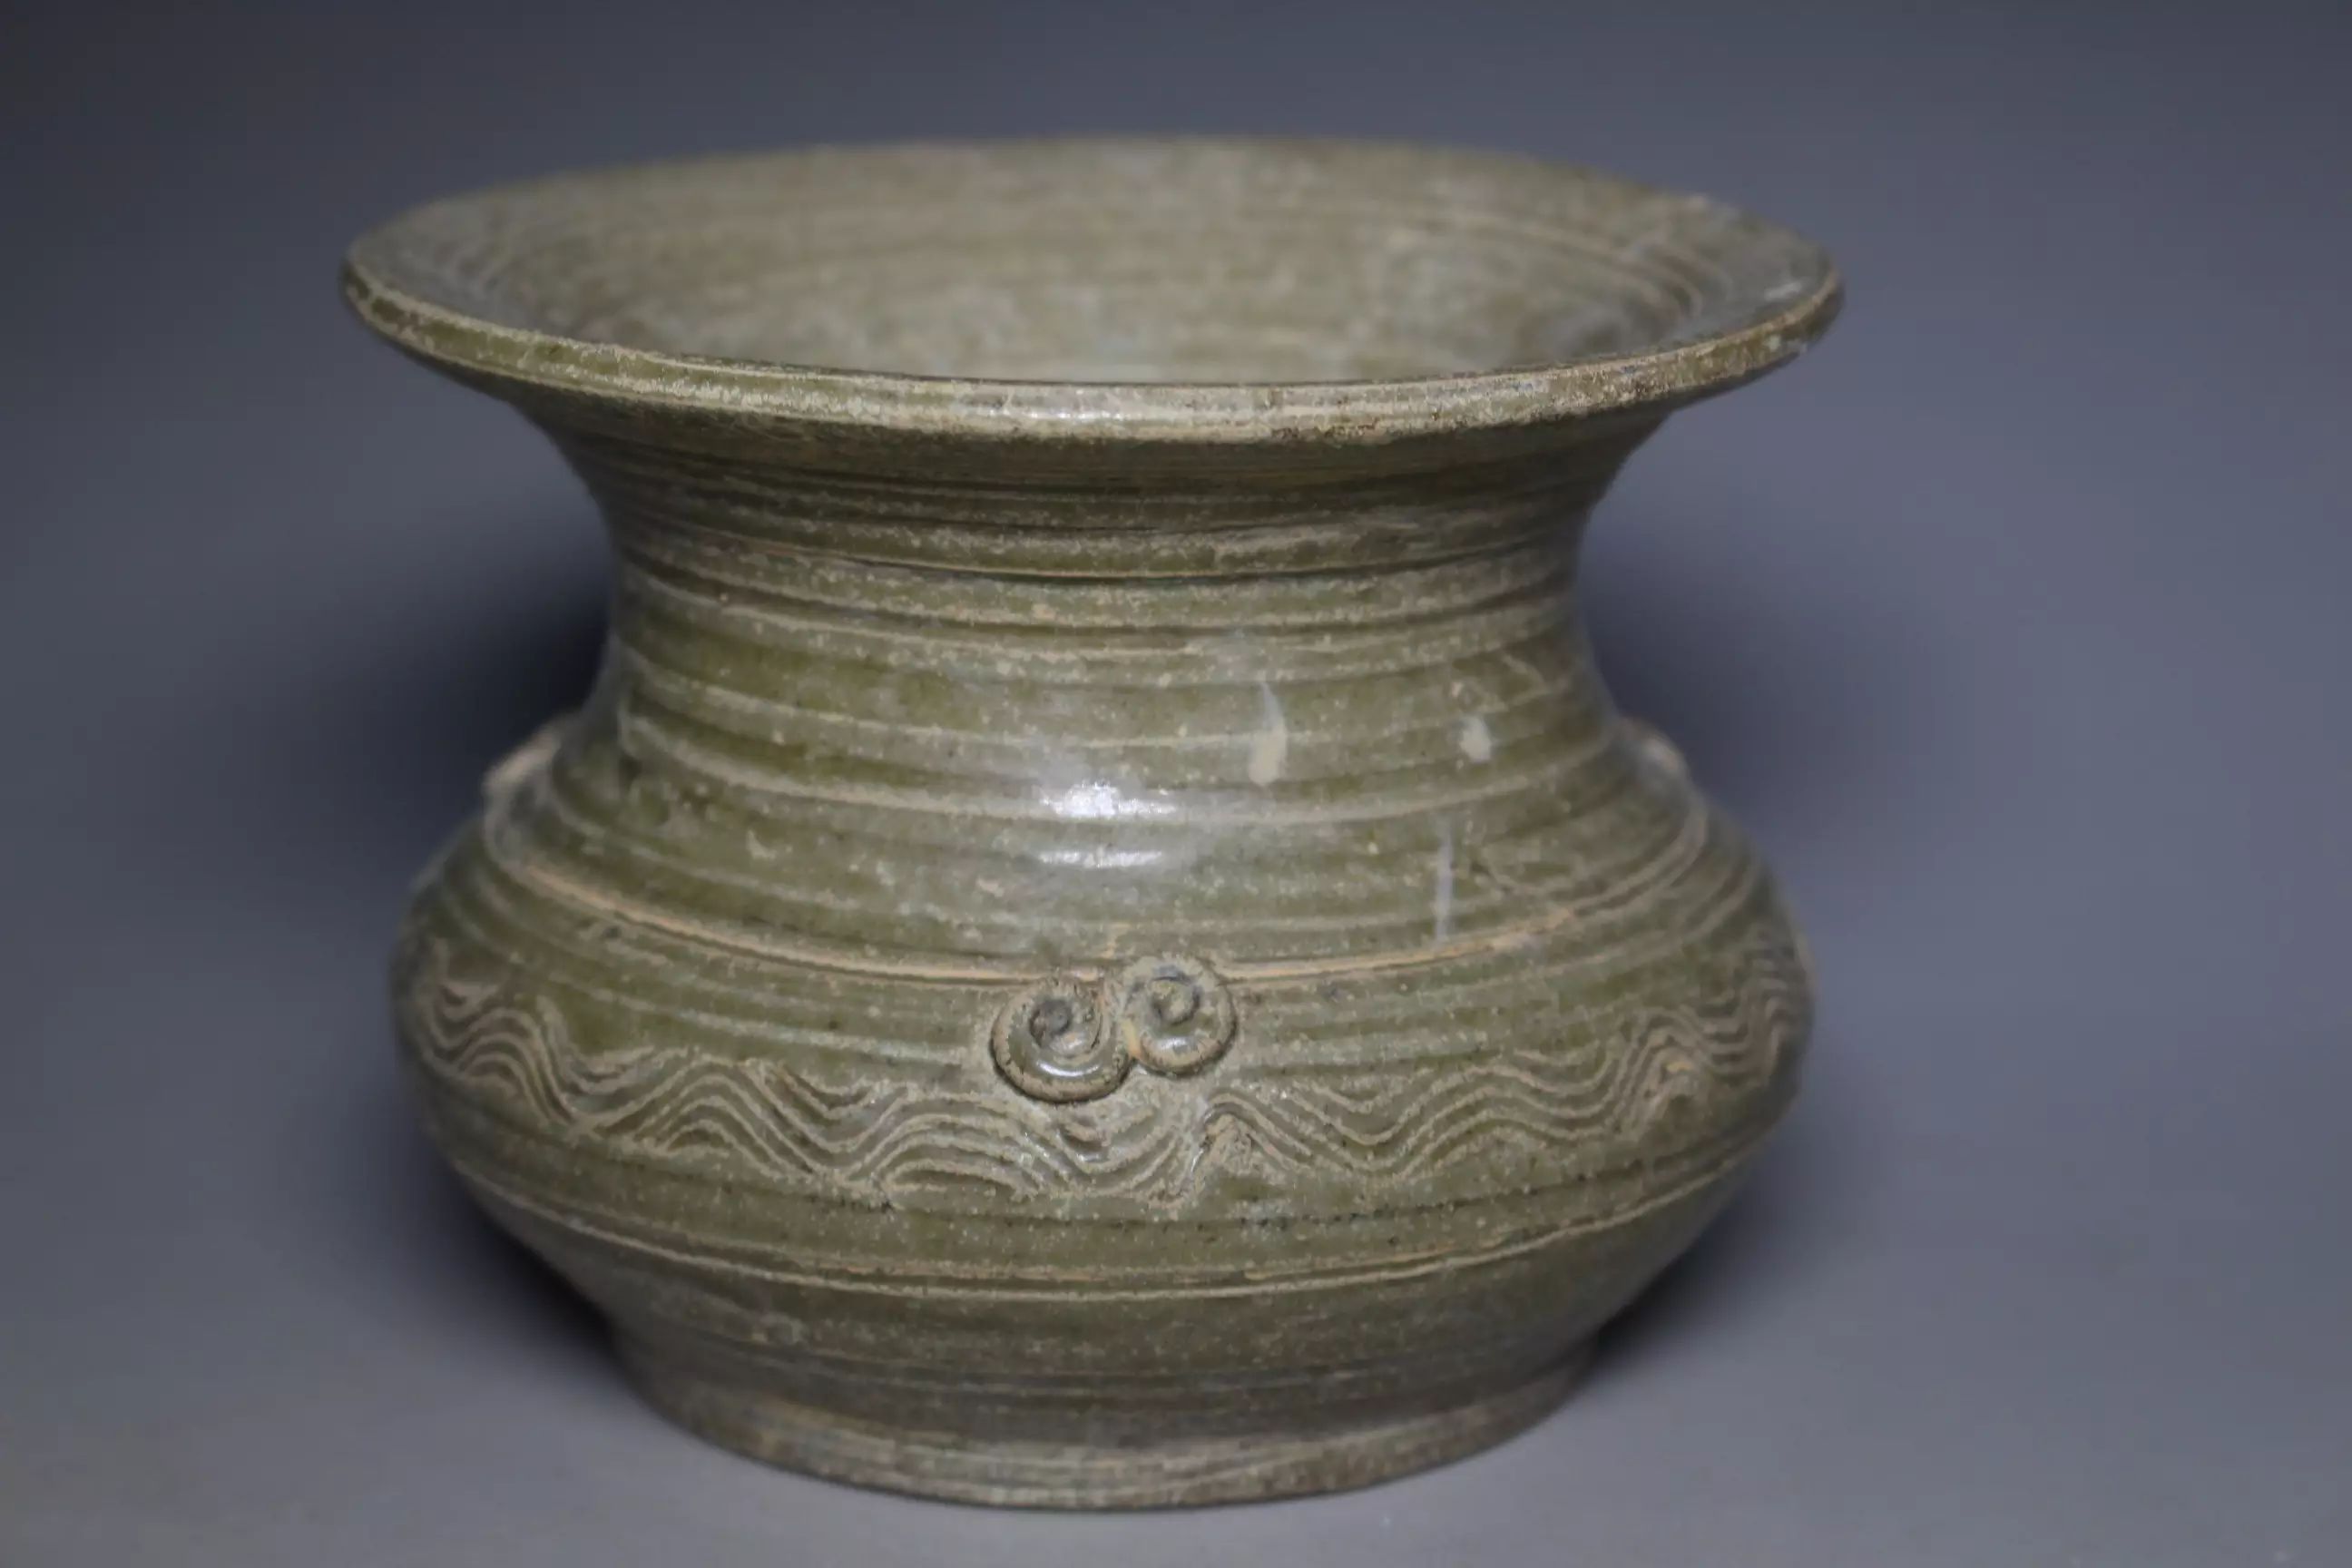 原始青瓷在春秋战国时期质量迅速提高,产量也增多了,只是吴国和楚国